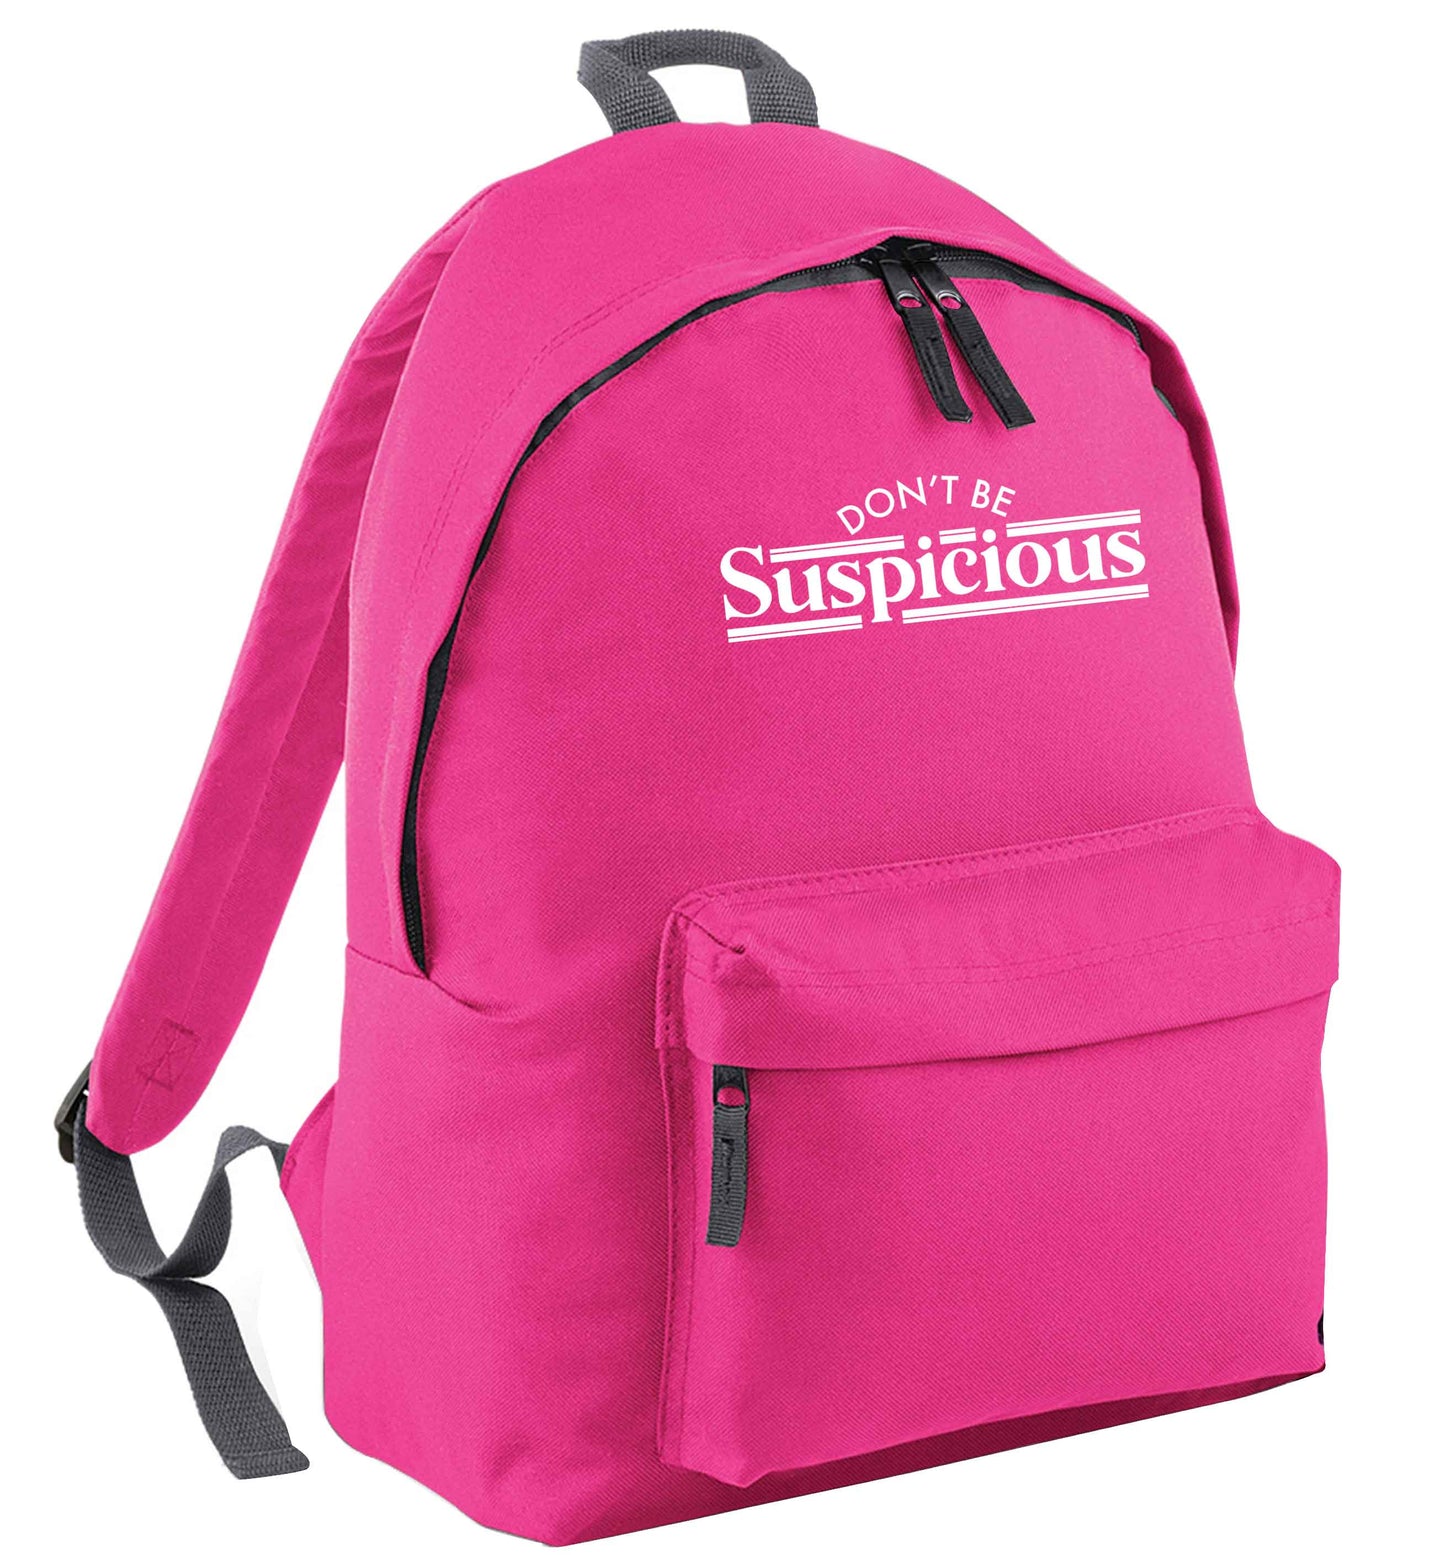 Gen Z funny viral meme  pink adults backpack